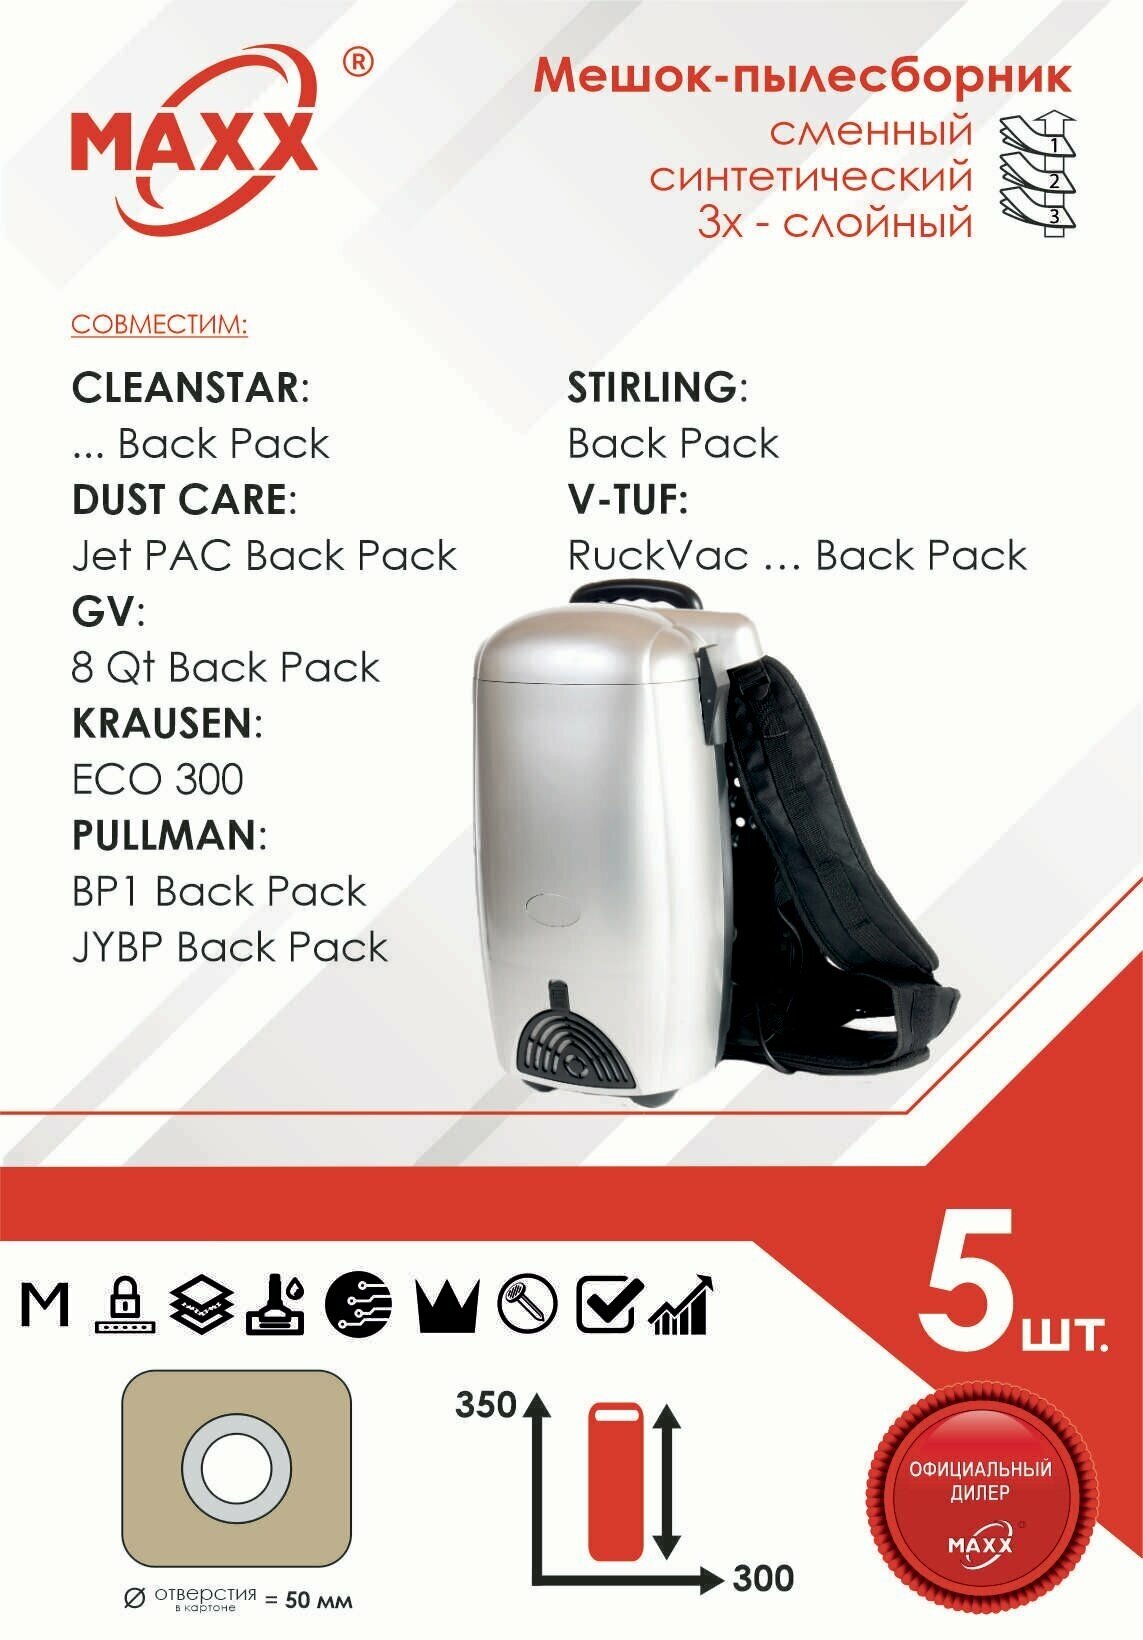 Мешок - пылесборник 5 шт. для пылесоса CLEANSTAR, DUST CARE, GV, KRAUSEN, PULLMAN, STIRLING, V-TUF